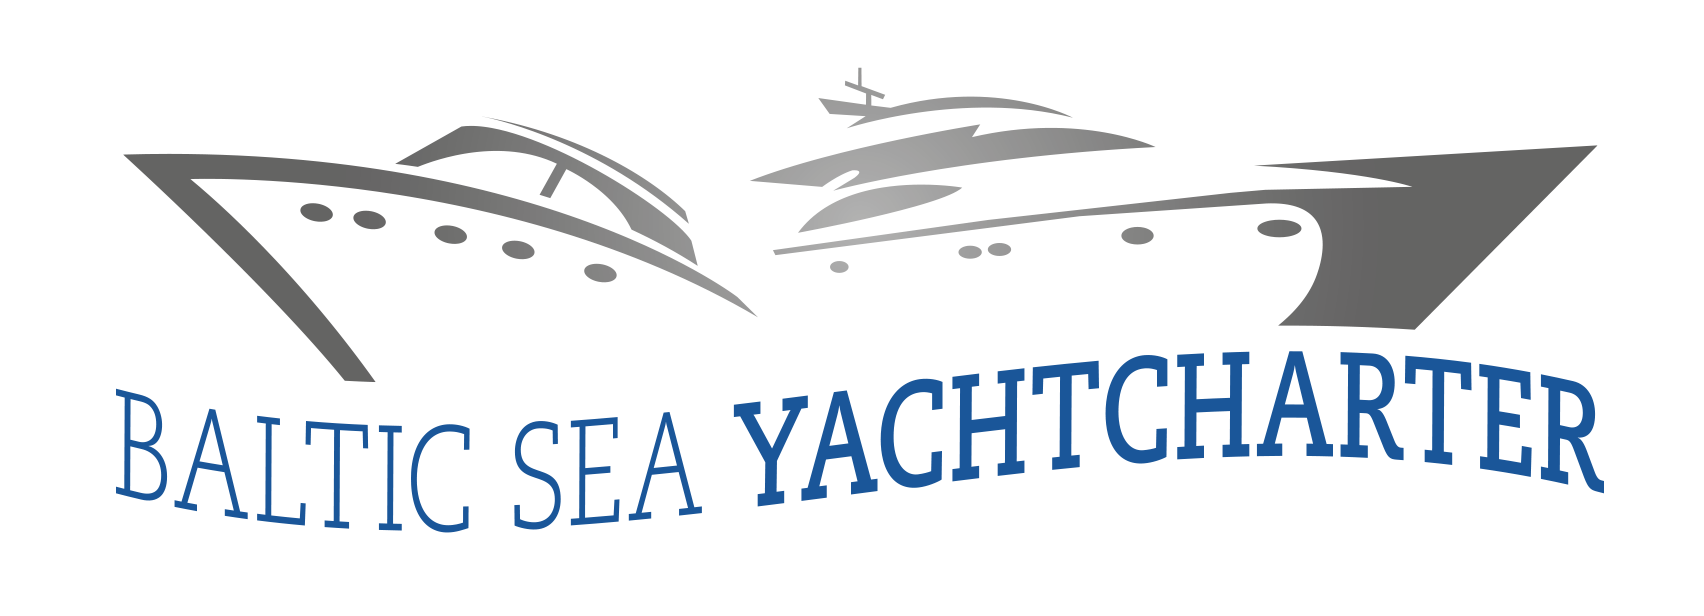 yacht charter ostsee wochenende